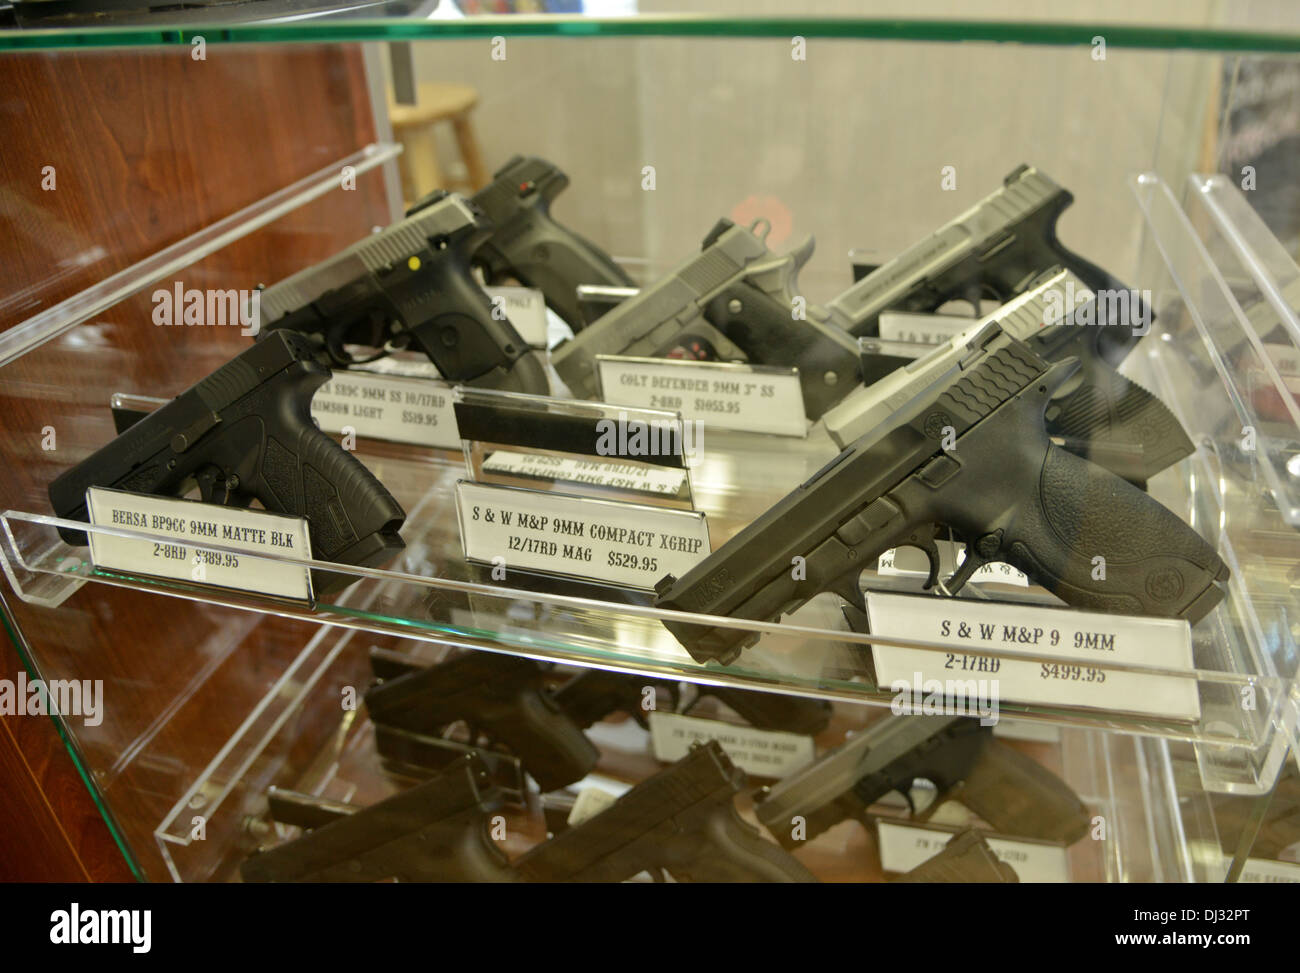 Pistolets sur l'affichage dans un magasin dans une petite ville de l'Amérique moyenne Banque D'Images